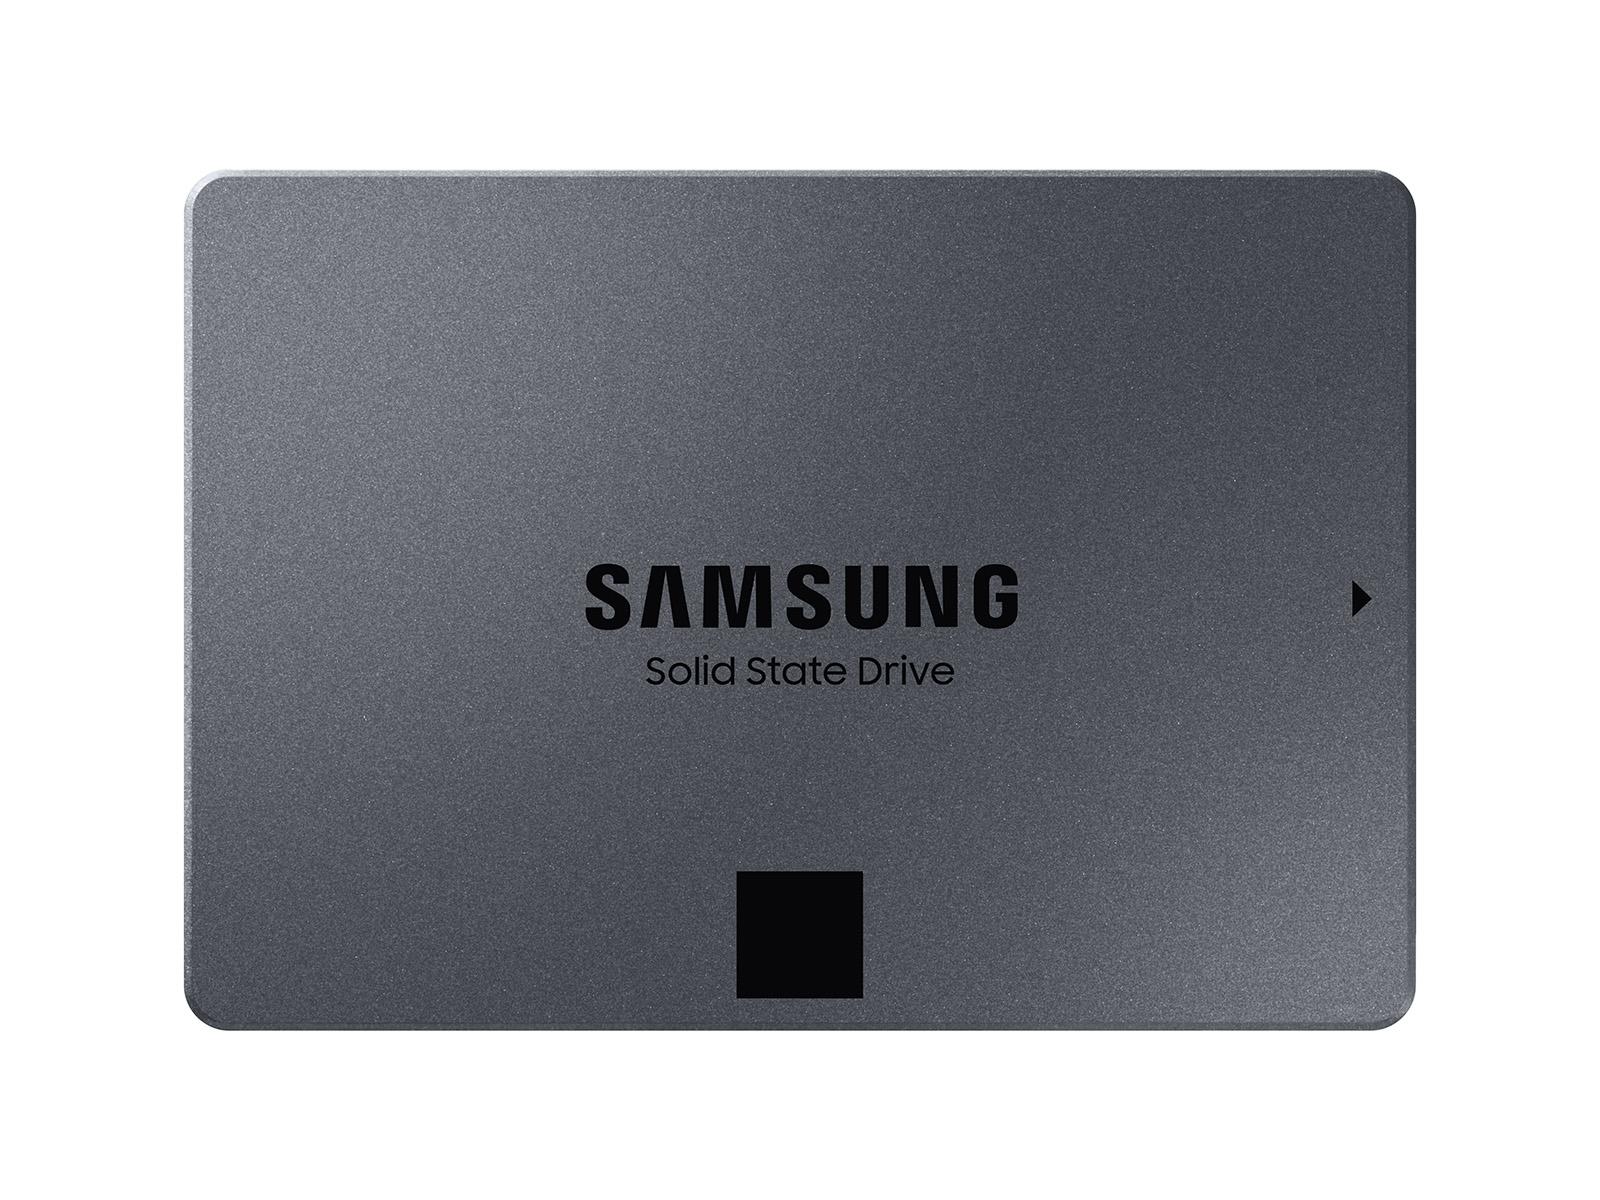 Solid State Drive (SSD) SAMSUNG 870 QVO, 8TB, SATA III, 2.5 inch, MZ-77Q8T0BW